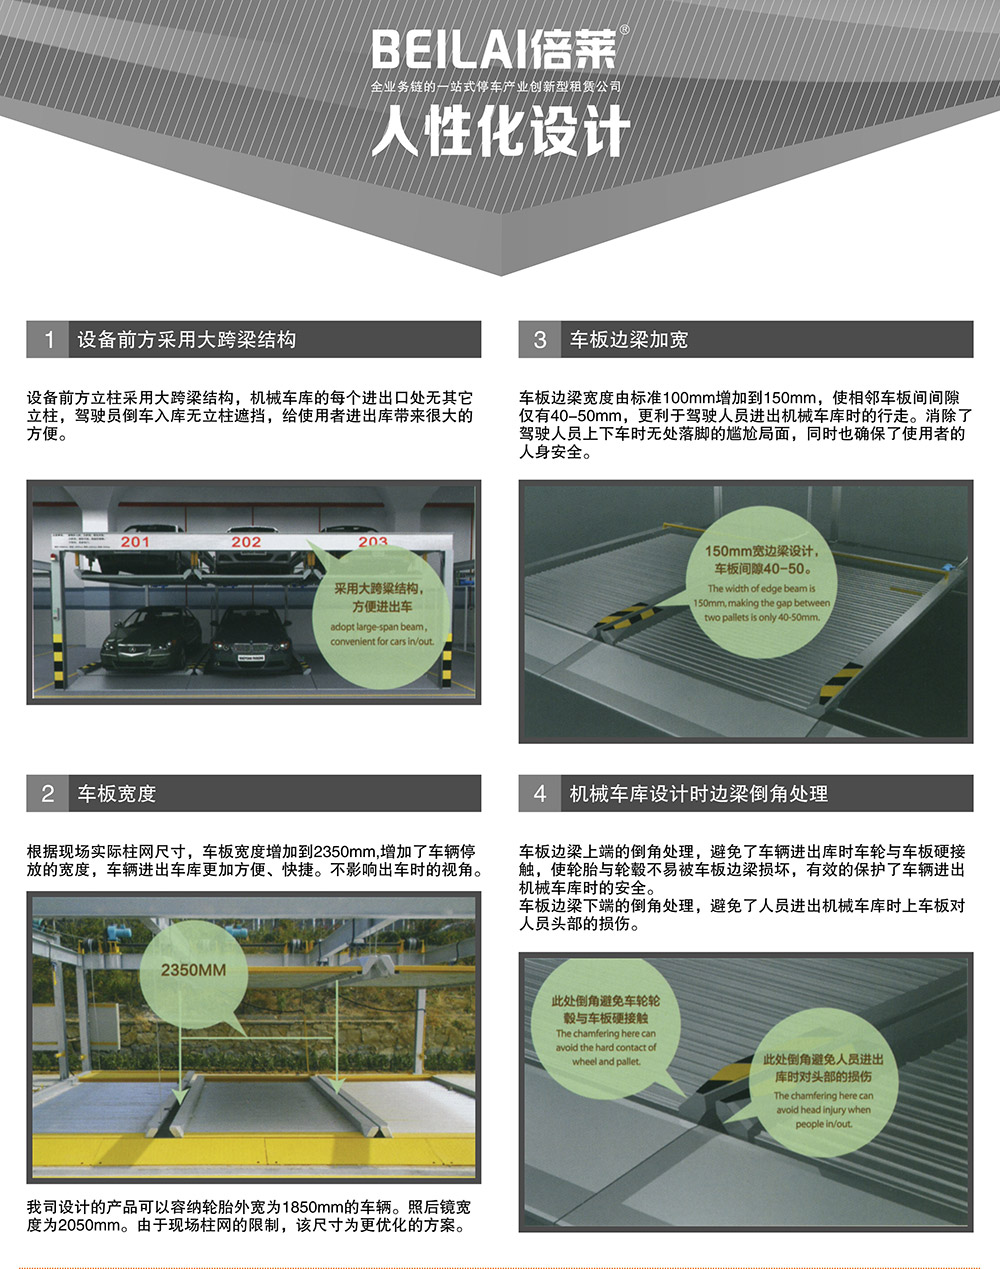 四川成都PSH升降横移立体停车设备人性化设计.jpg